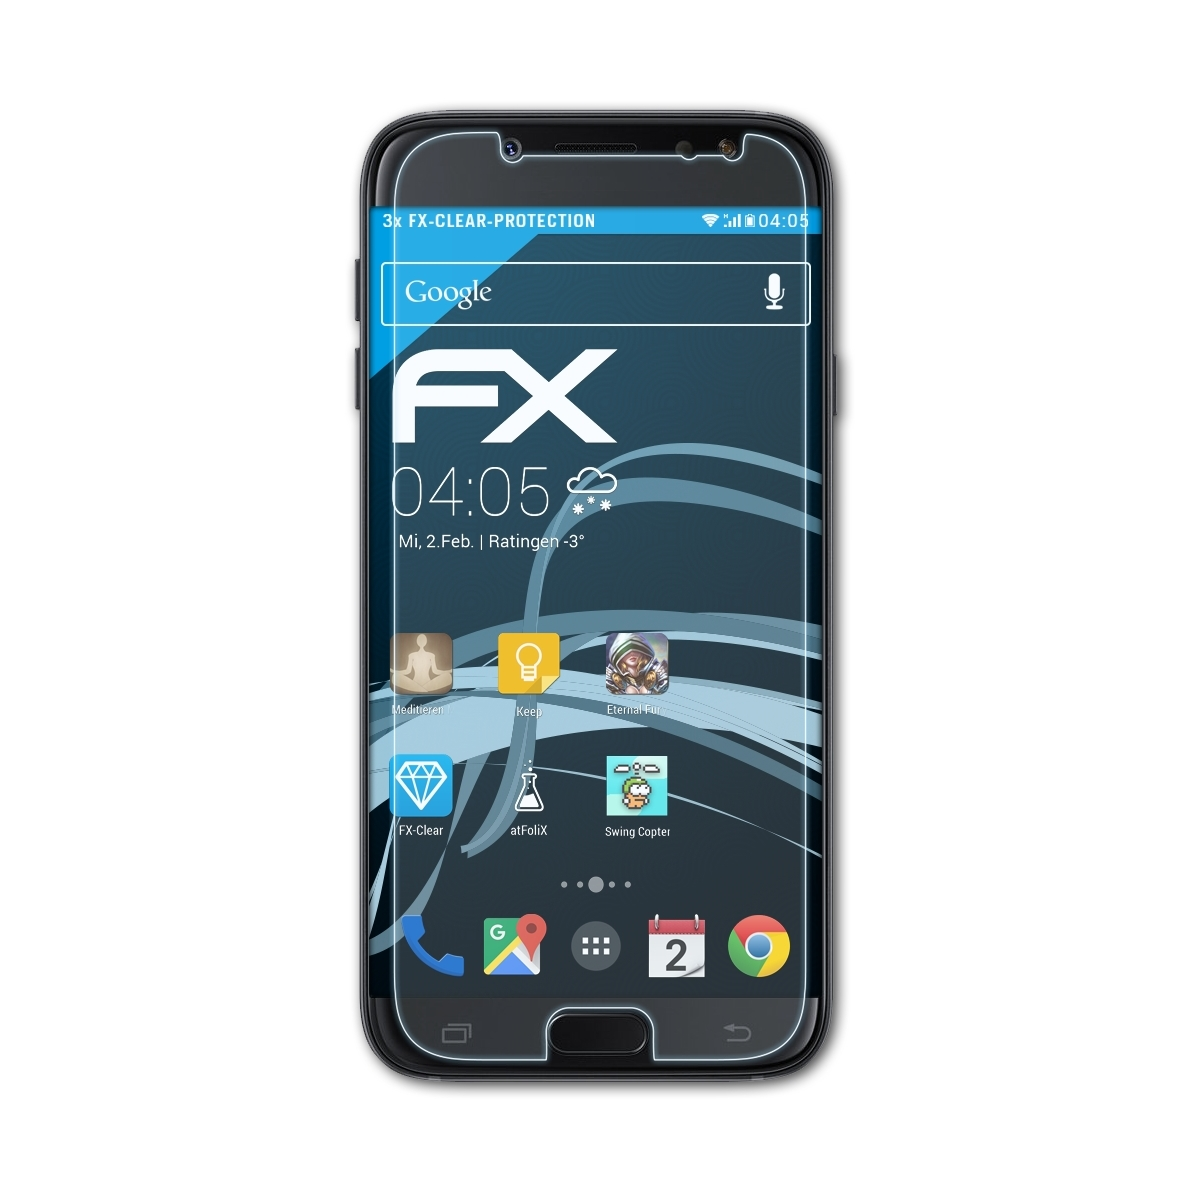 (2017) Duos) FX-Clear 3x Samsung J5 Galaxy Displayschutz(für ATFOLIX